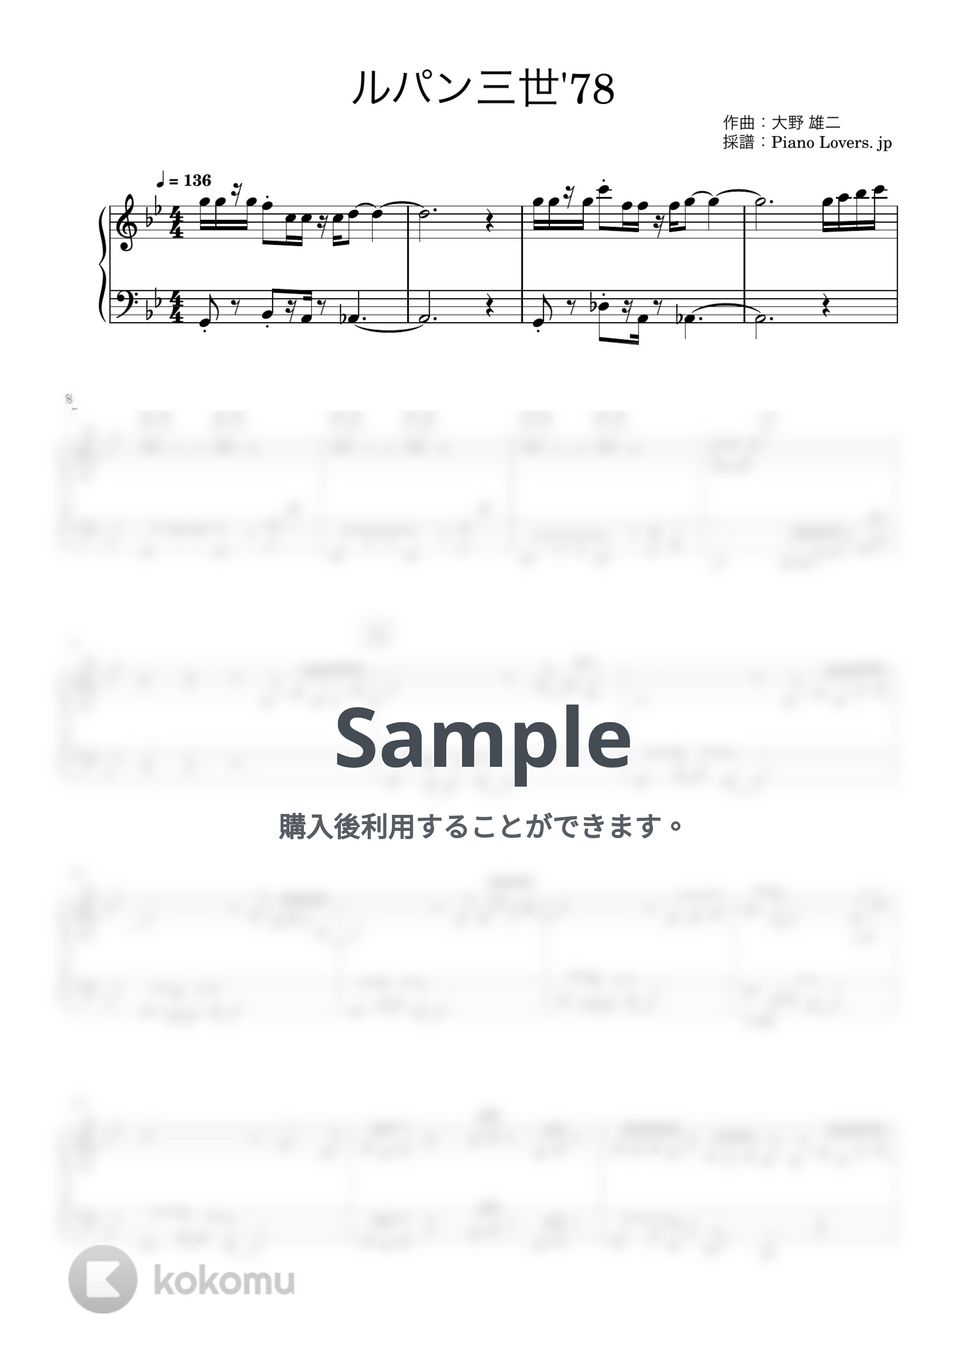 大野雄二 - ルパン三世のテーマ’78 (ピアノ楽譜 / 簡単 / 初心者) by Piano Lovers. jp